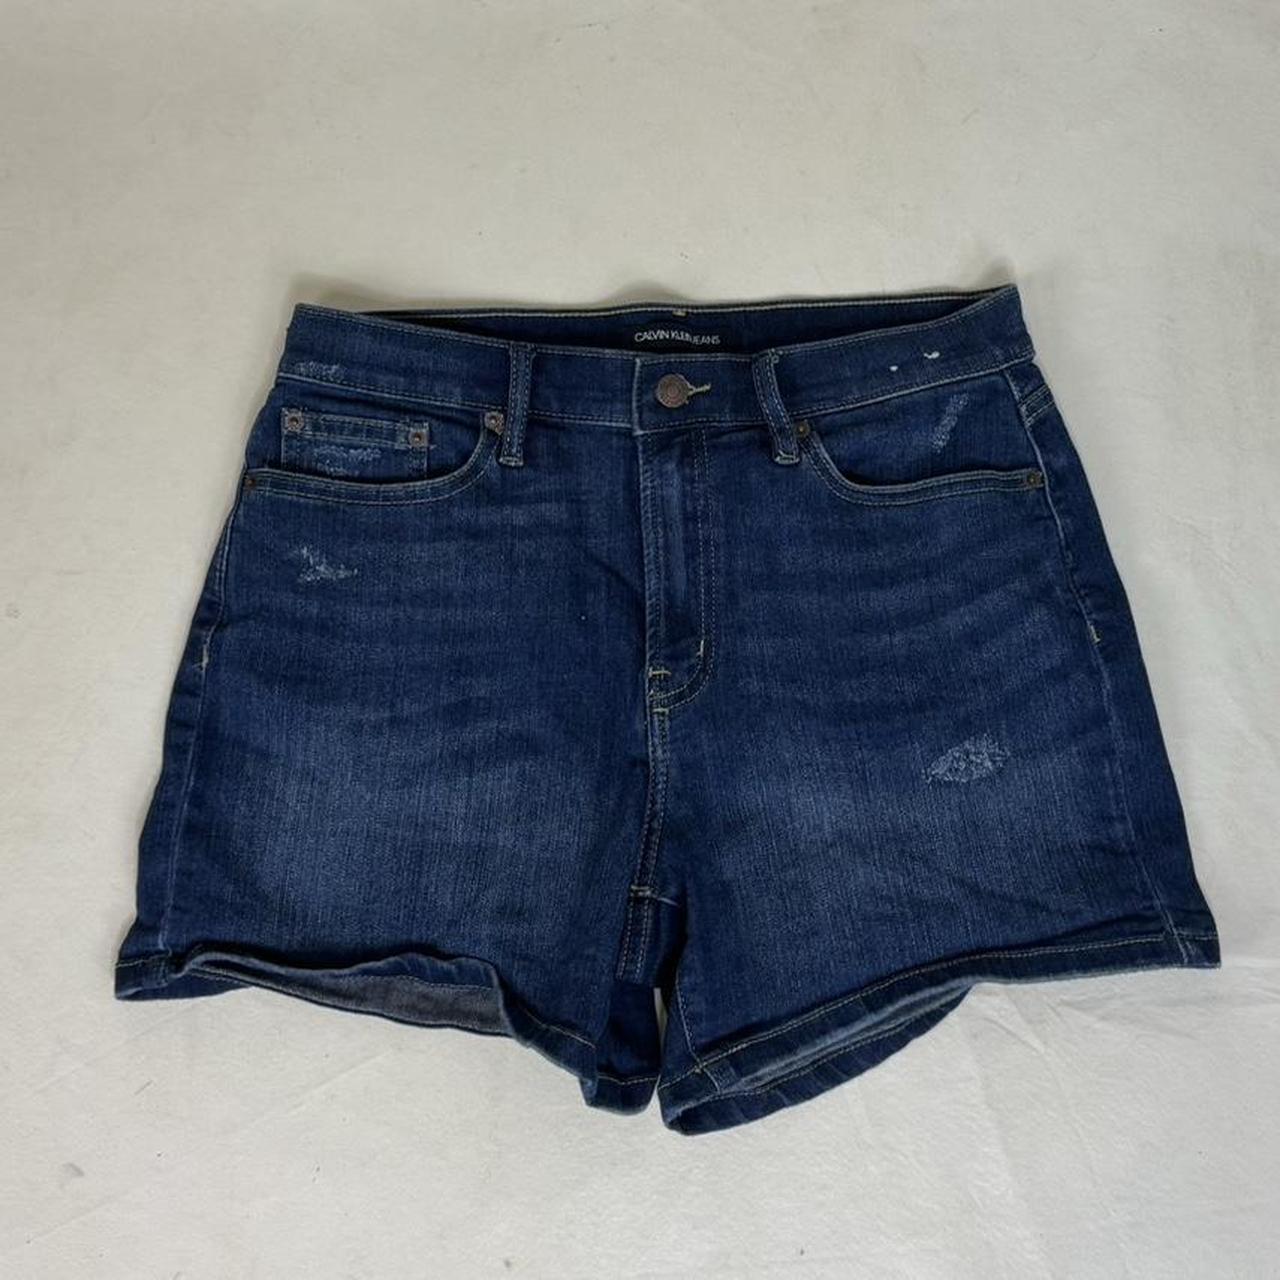 Calvin Klein Jean shorts -4in inseam #jeanshorts... - Depop